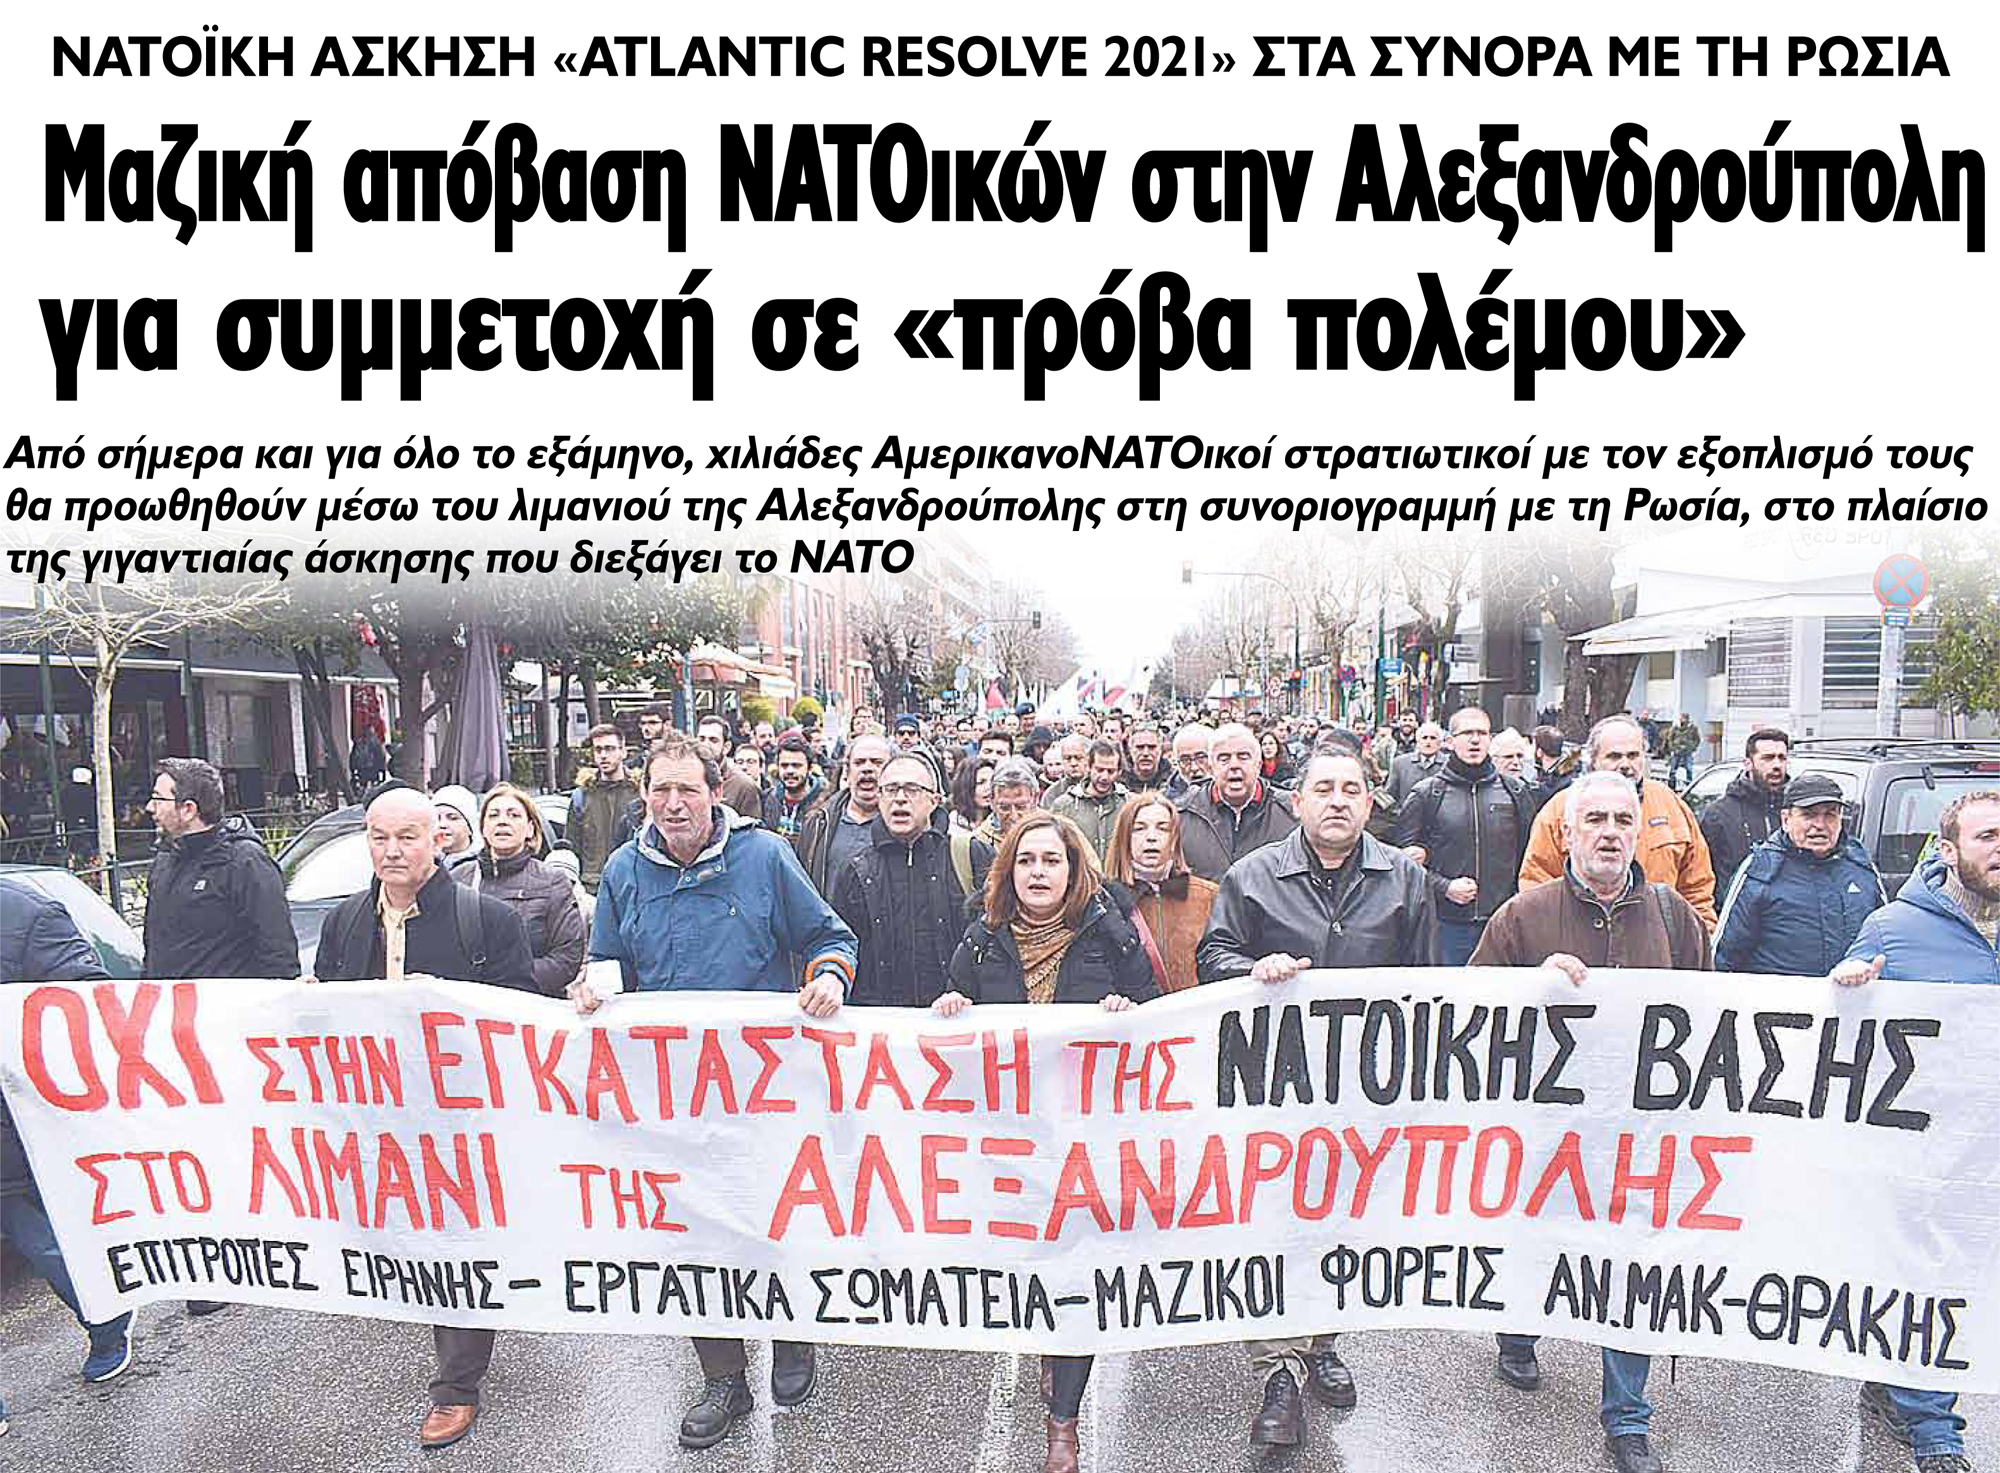 Μαζική απόβαση ΝΑΤΟικών στην Αλεξανδρούπολη για συμμετοχή σε «πρόβα πολέμου»